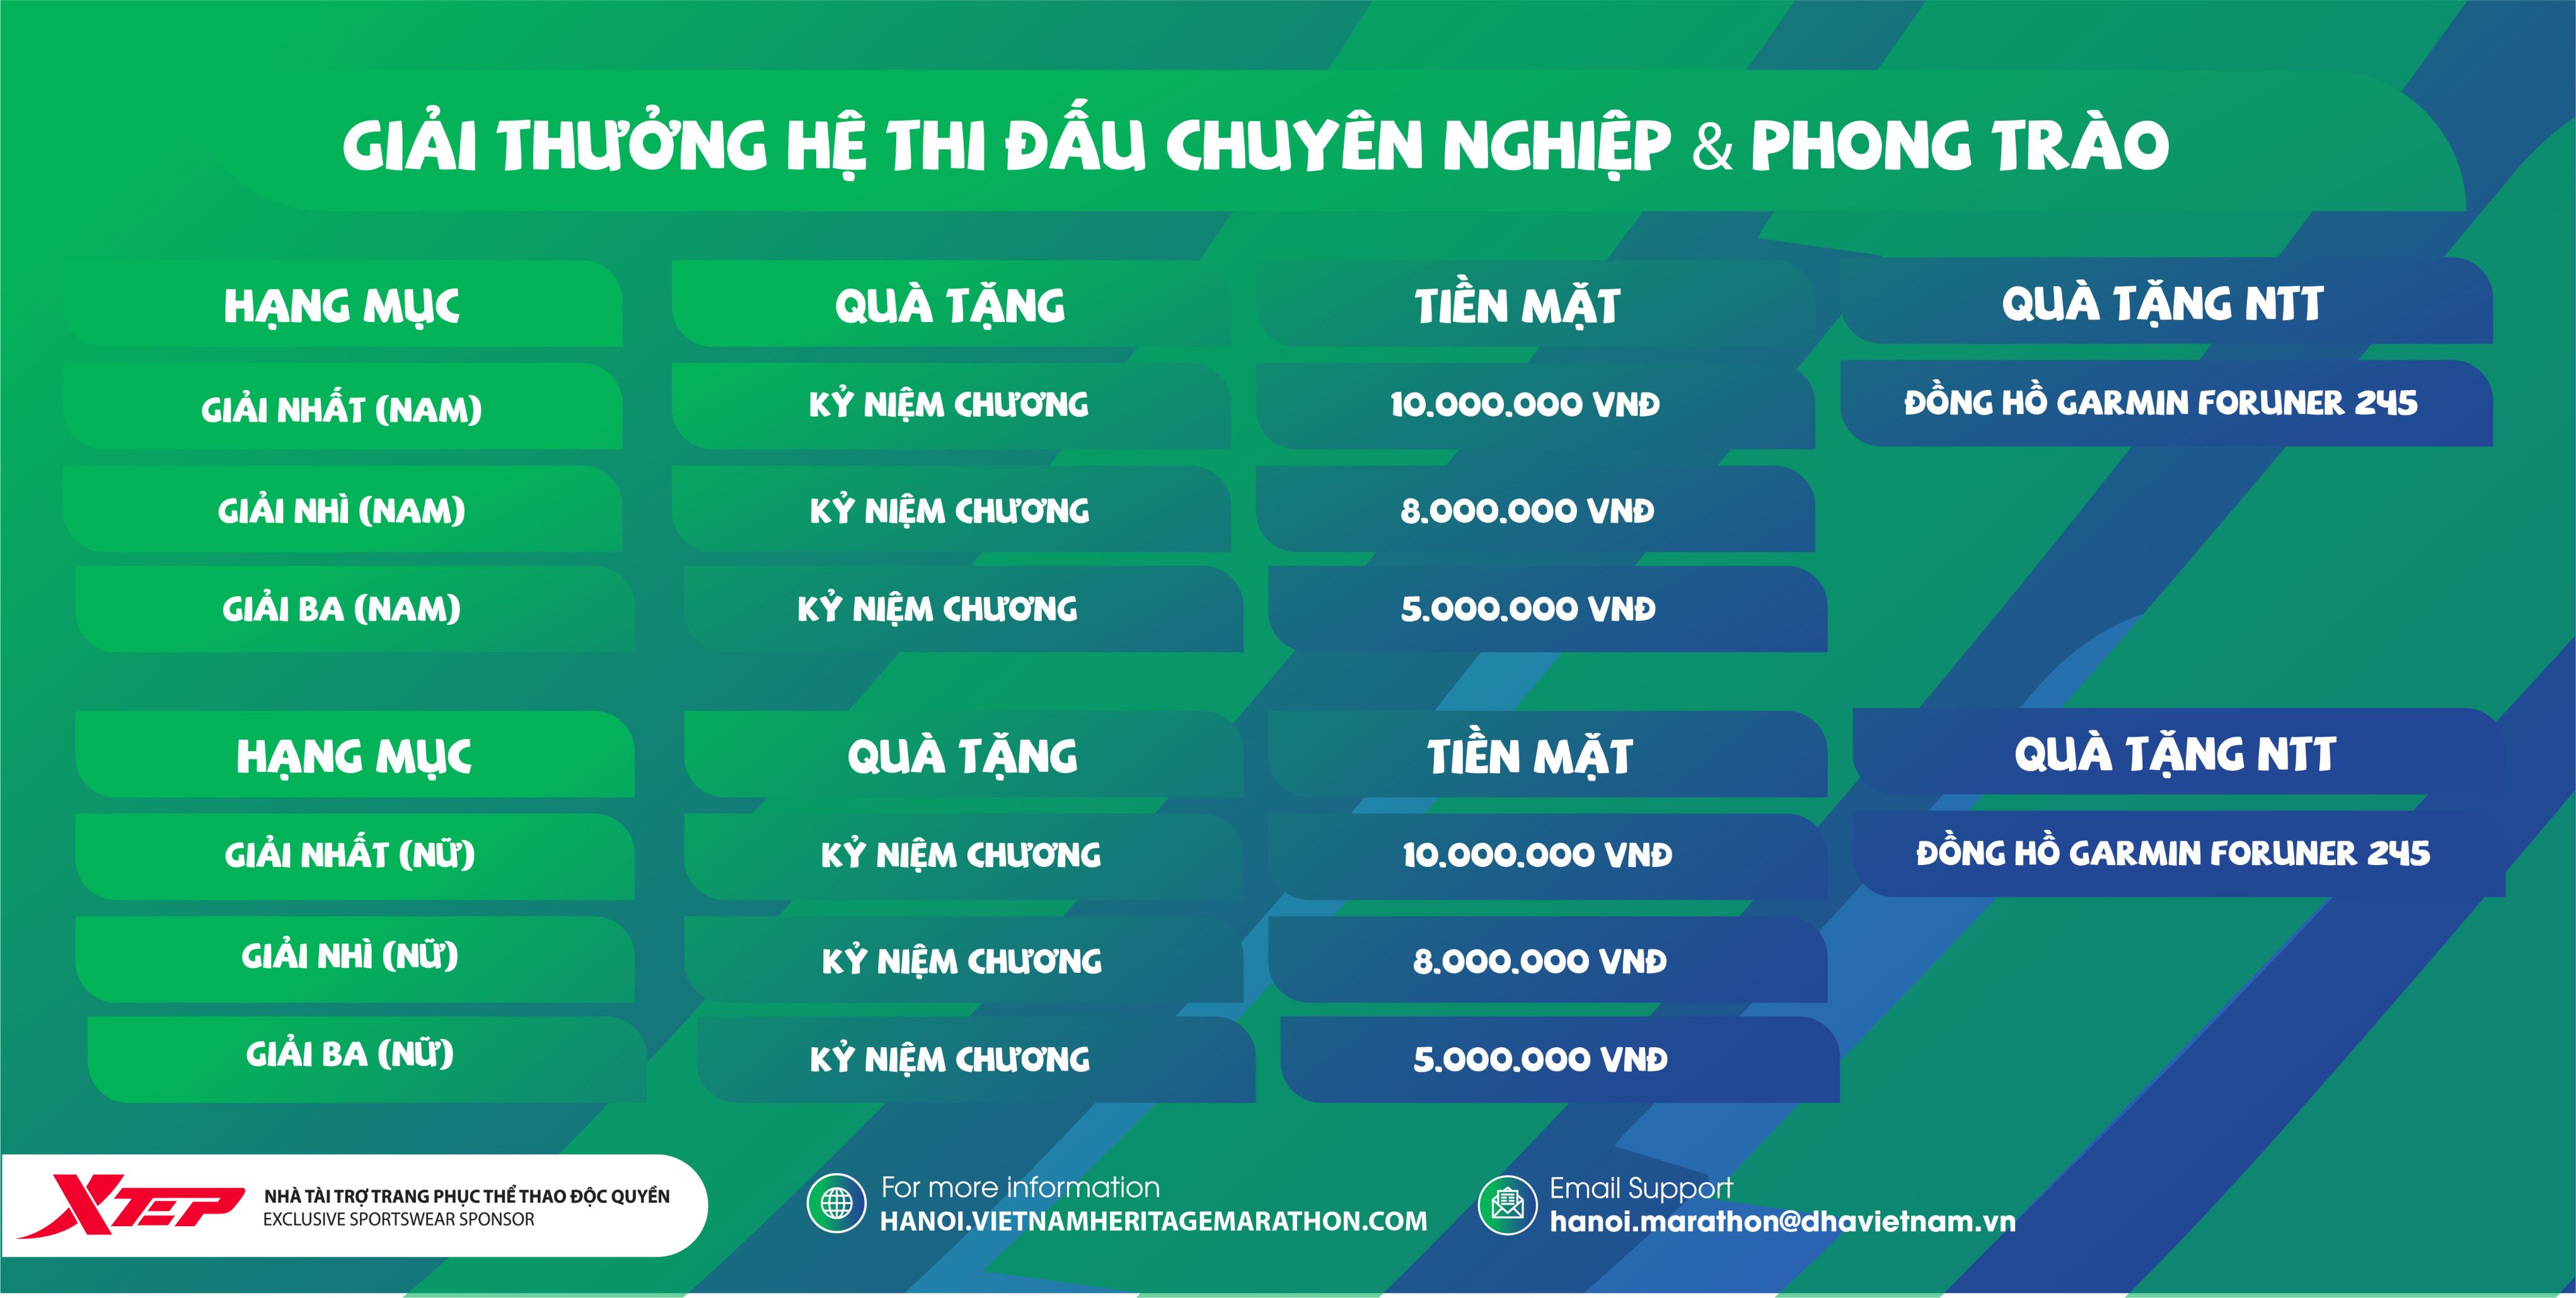 ANNOUNCEMENT: VPBank Hanoi Marathon 2021 Prize Structure